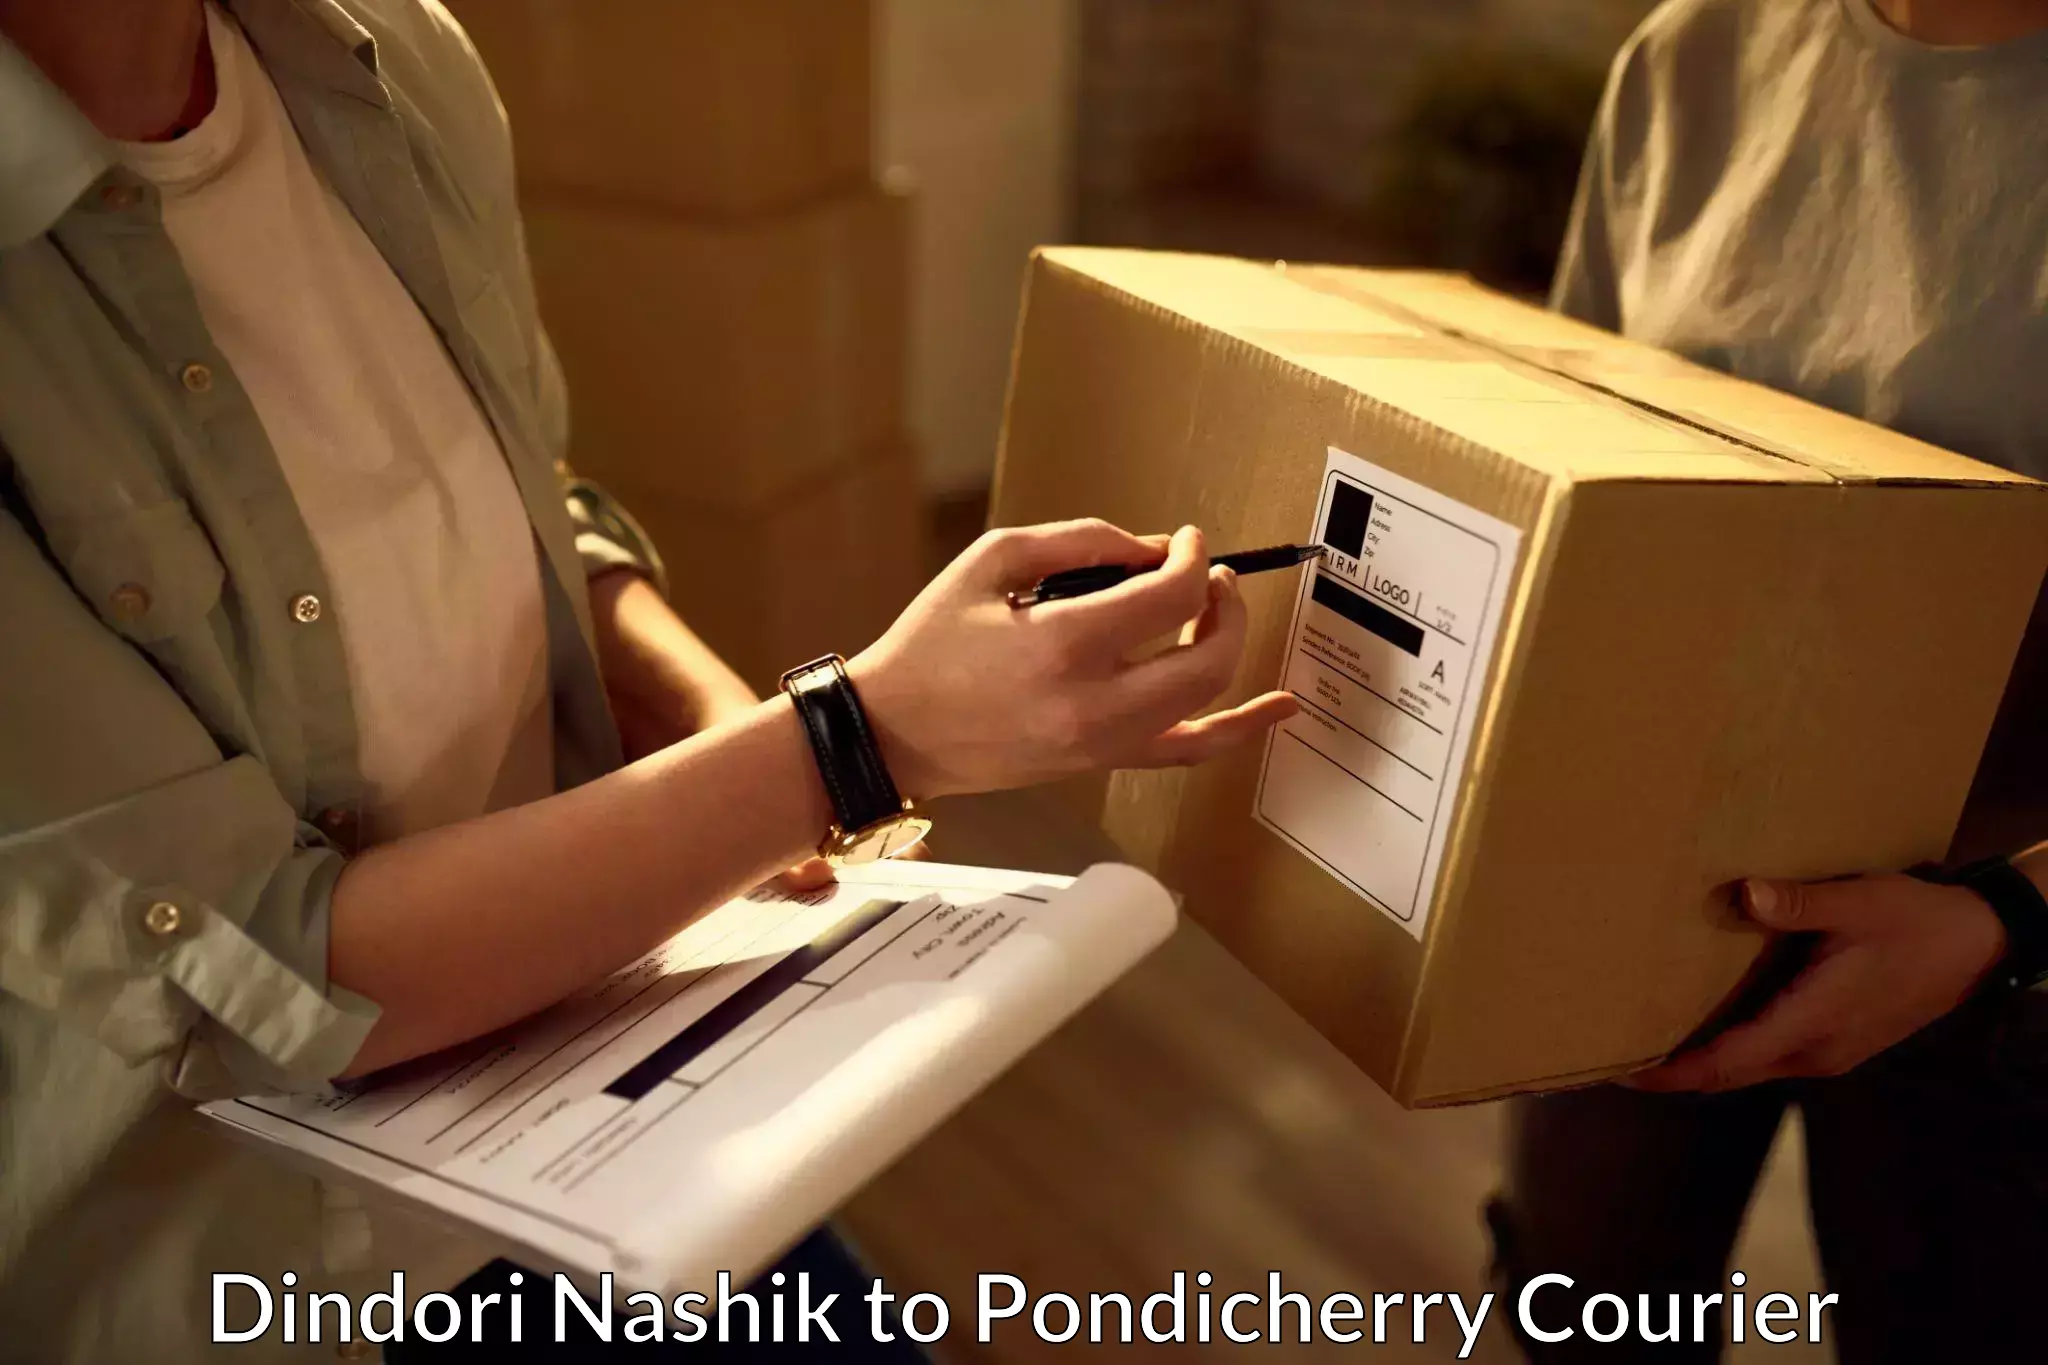 On-call courier service Dindori Nashik to Pondicherry